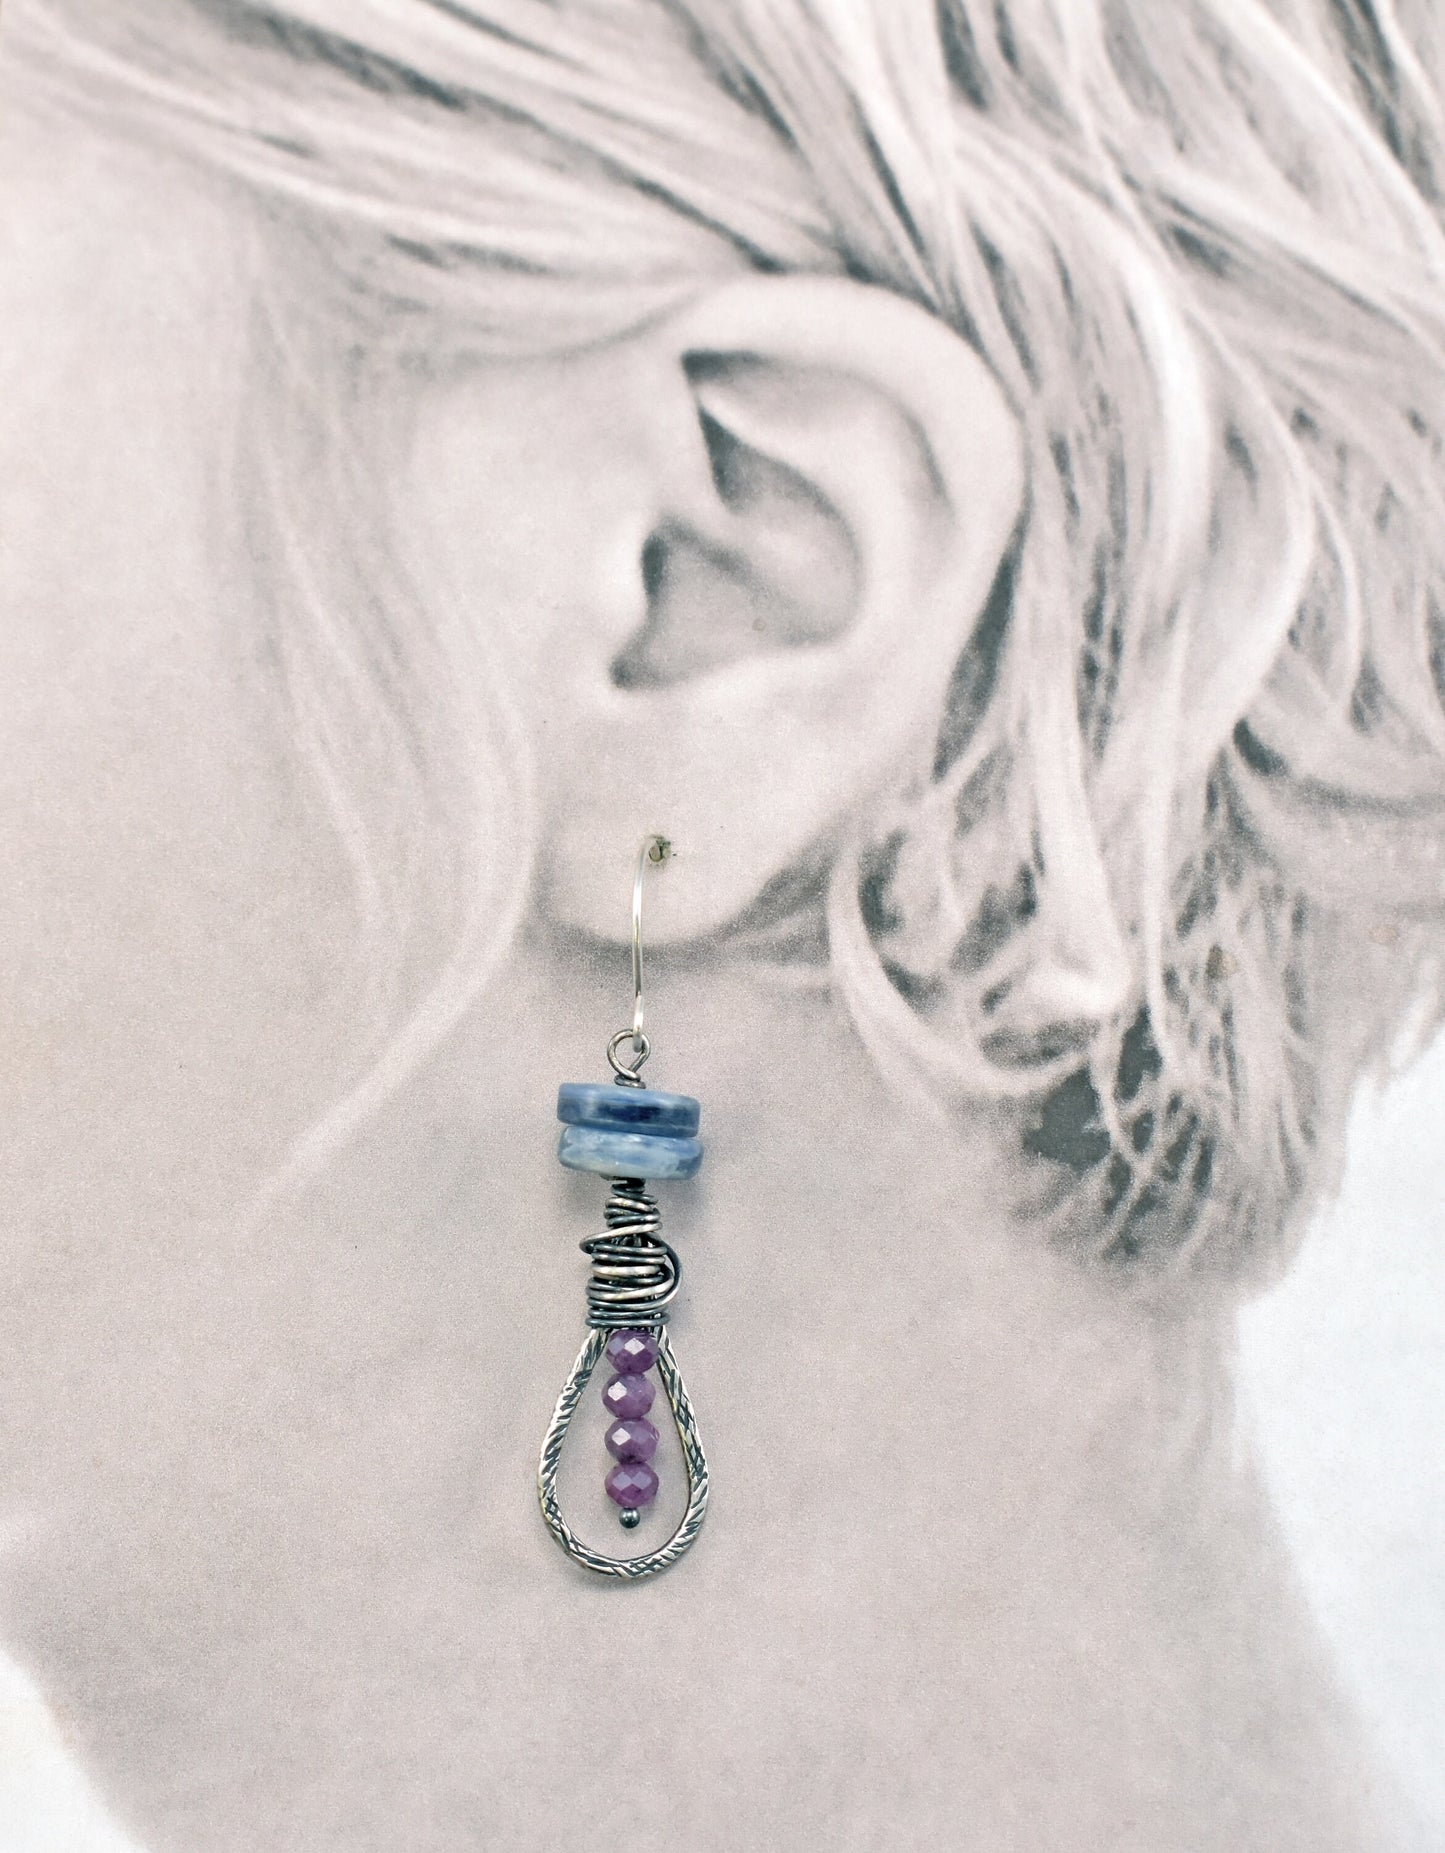 Kyanite Ruby Earrings, Sterling Silver Teardrop Dangles, Light Blue Purple Gemstone, Rustic Wire Jewelry, Artisan Unique Stone